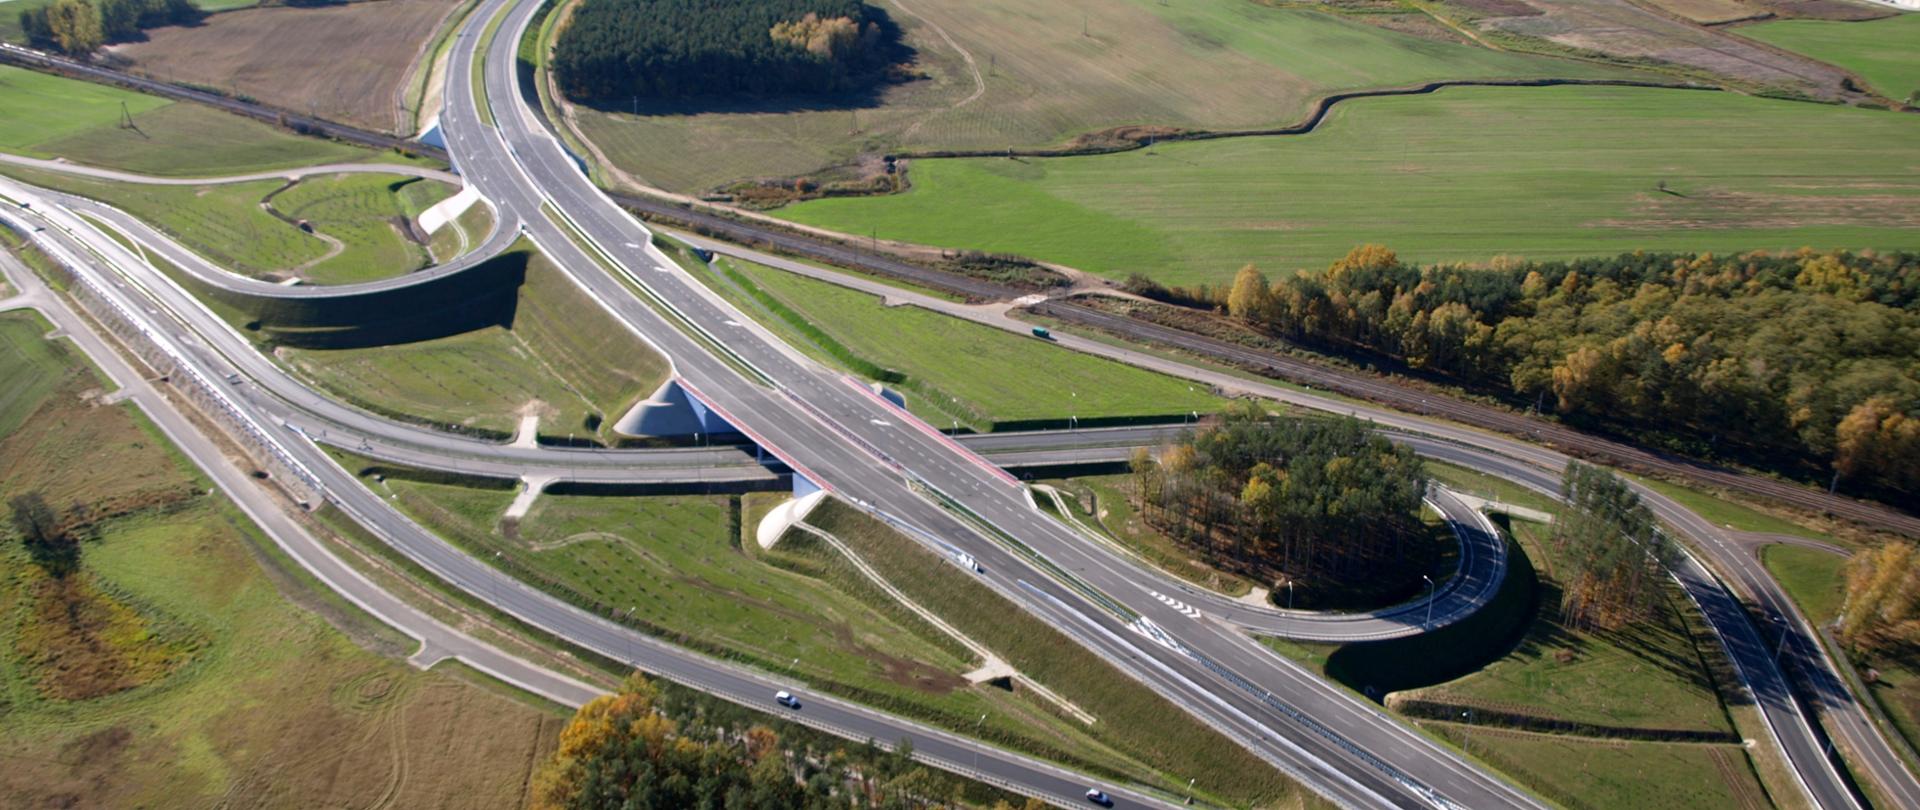 Zdjęcie przedstawiające węzeł drogowy Poznań Północ na drodze ekspresowej S11. Węzeł widoczny z powietrza przebiegający między łąkami, polami i zabudową magazynową. Na jednej z łącznic doprowadzających ruch do węzła widoczne poruszające się pojazdy.